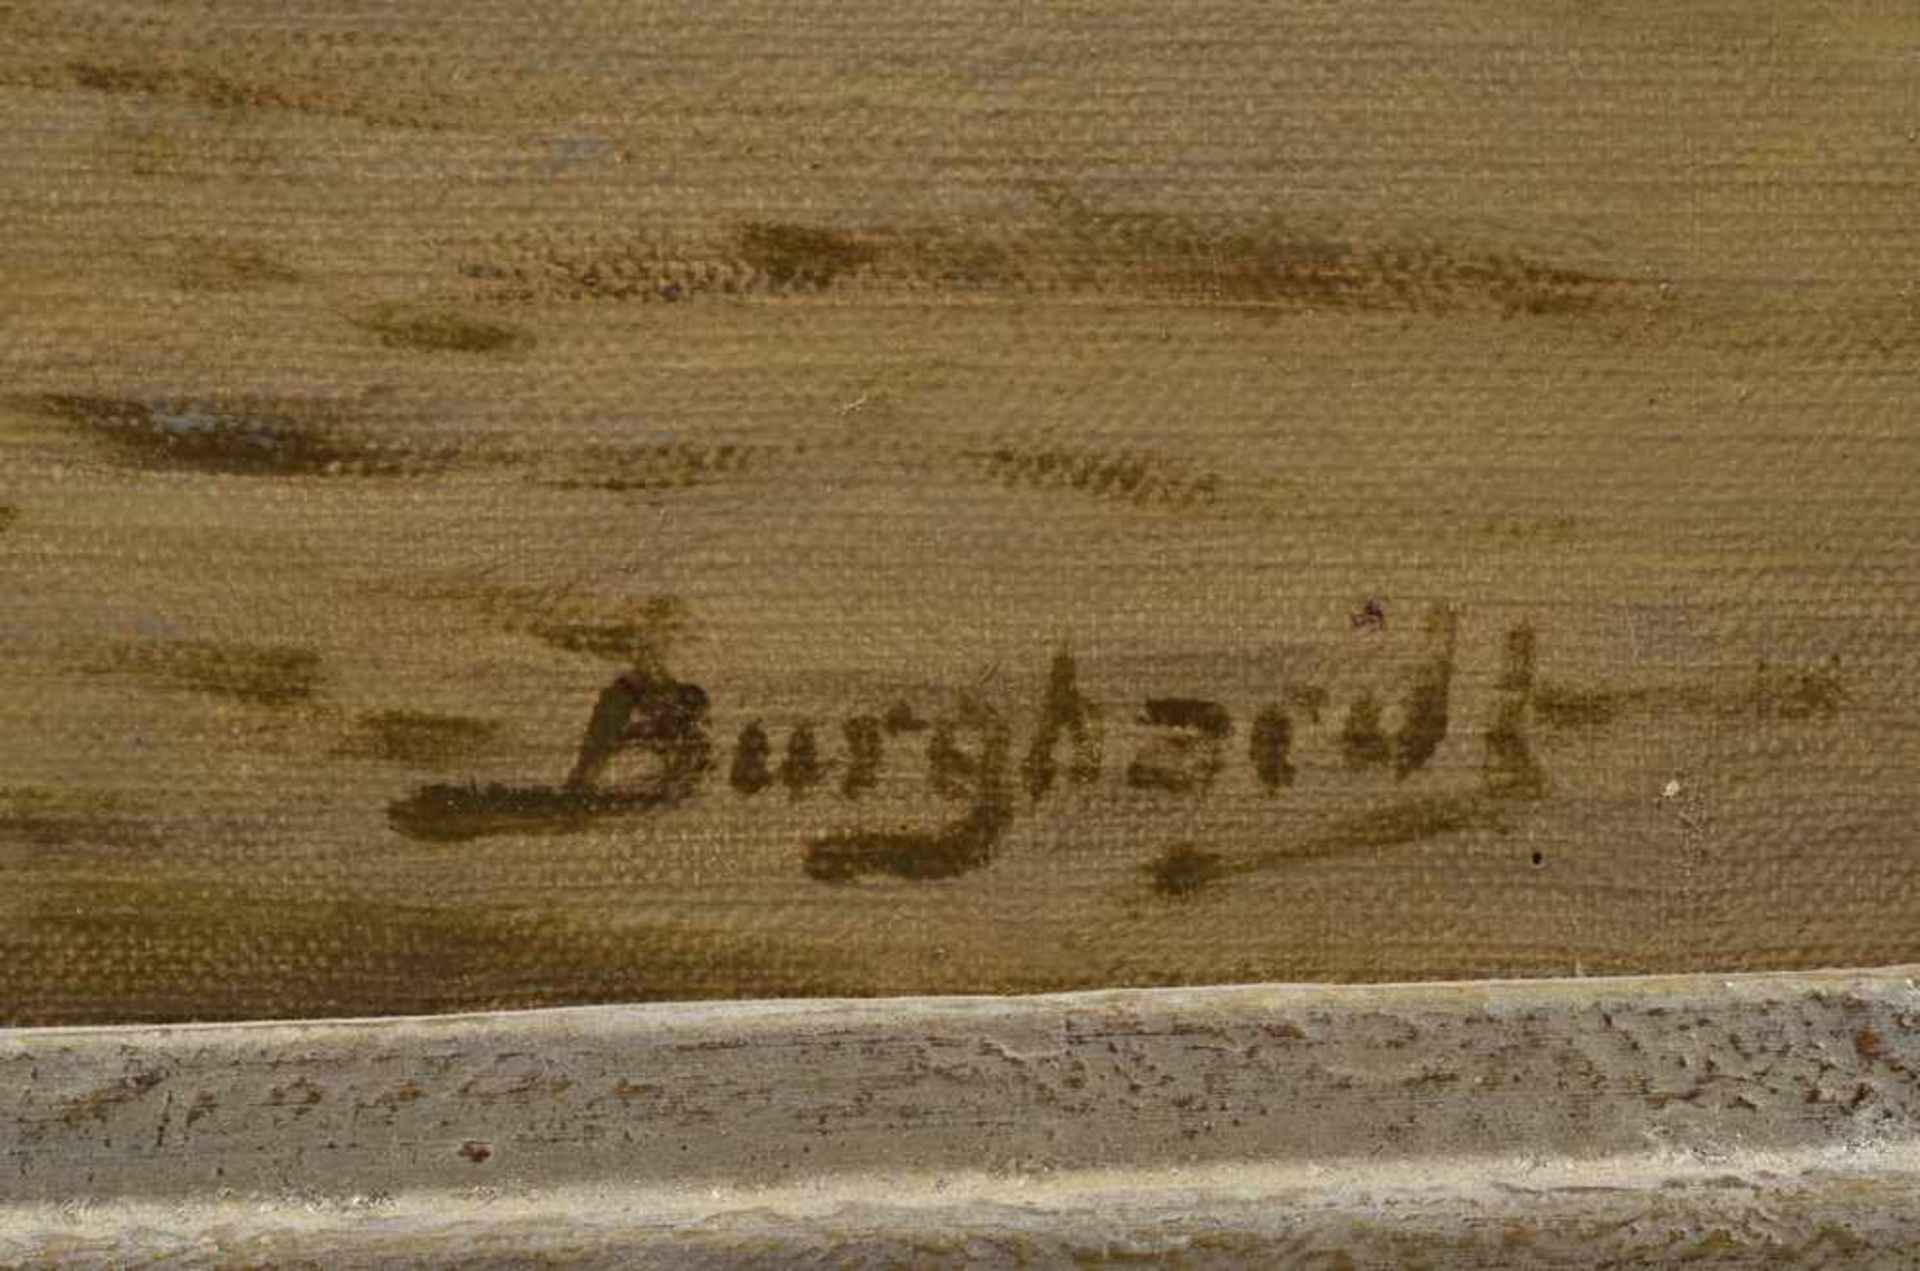 Burghardt, Gustav Paul (1875-1955) "Dampfer vor den Landungsbrücken", Öl/Leinwand, u.r.sign., - Bild 3 aus 4